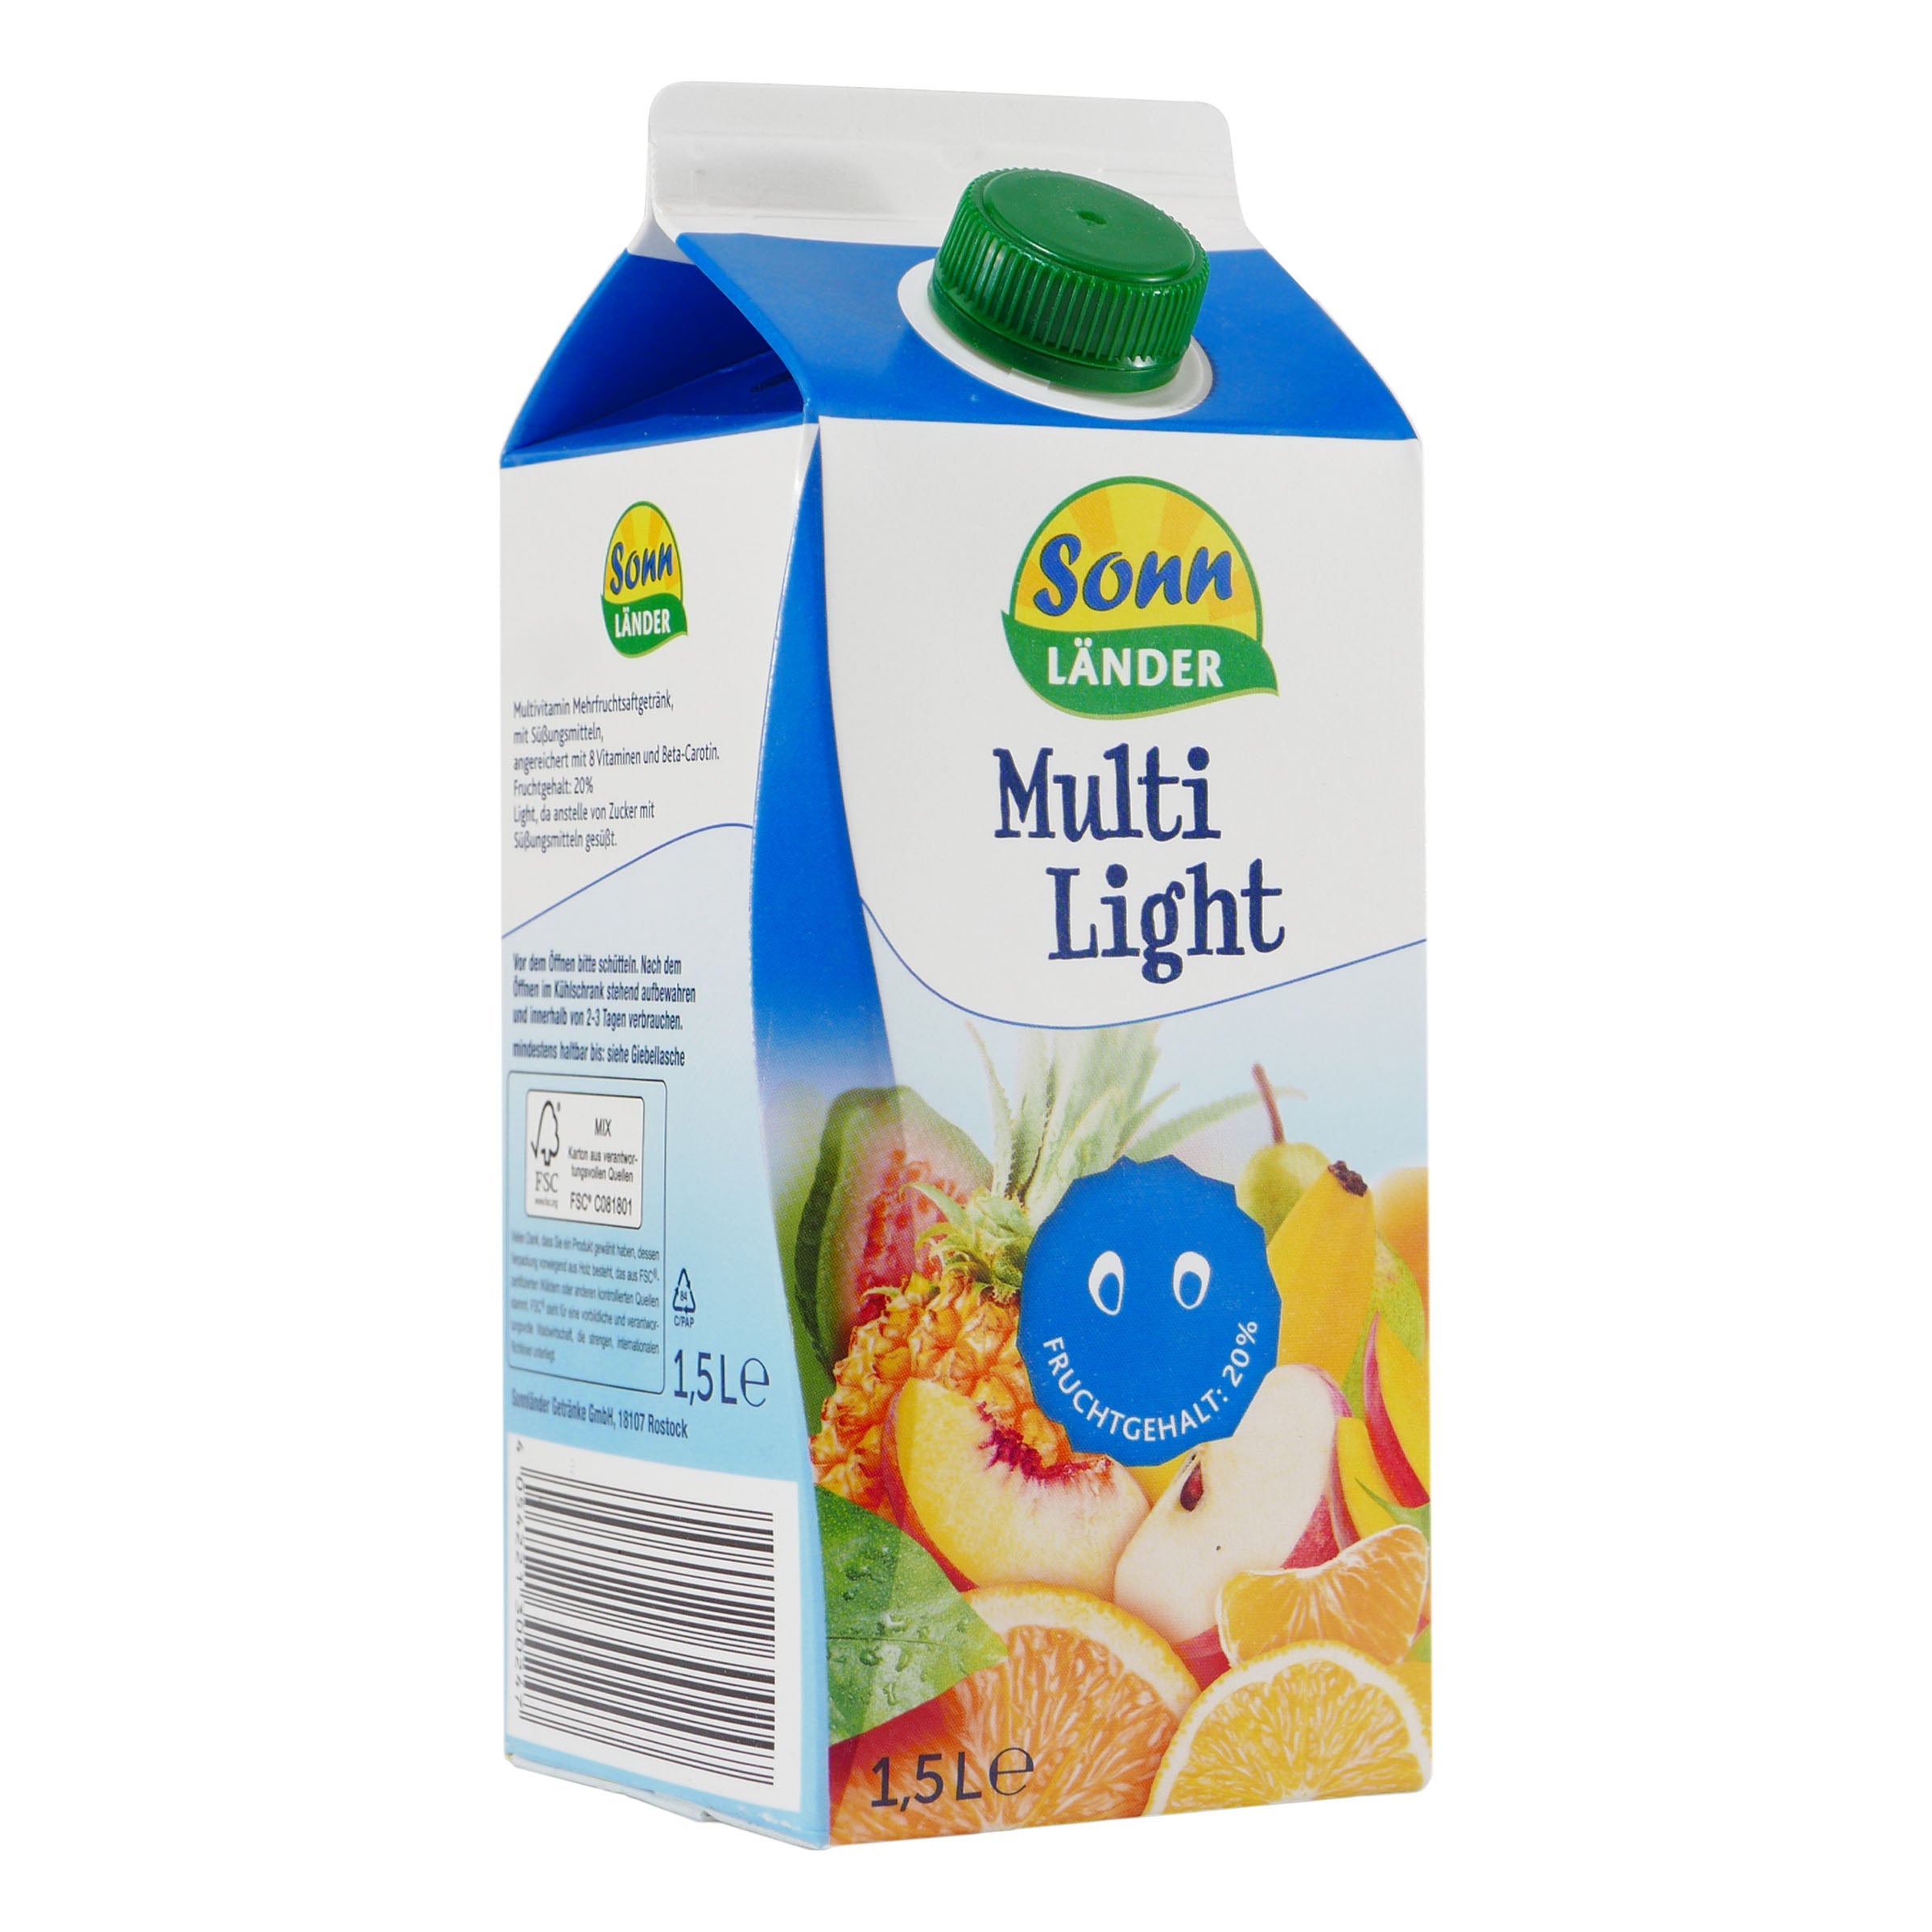 Sonnländer Multi-Light Fruchtsaftgetränk (6 x 1,5L)